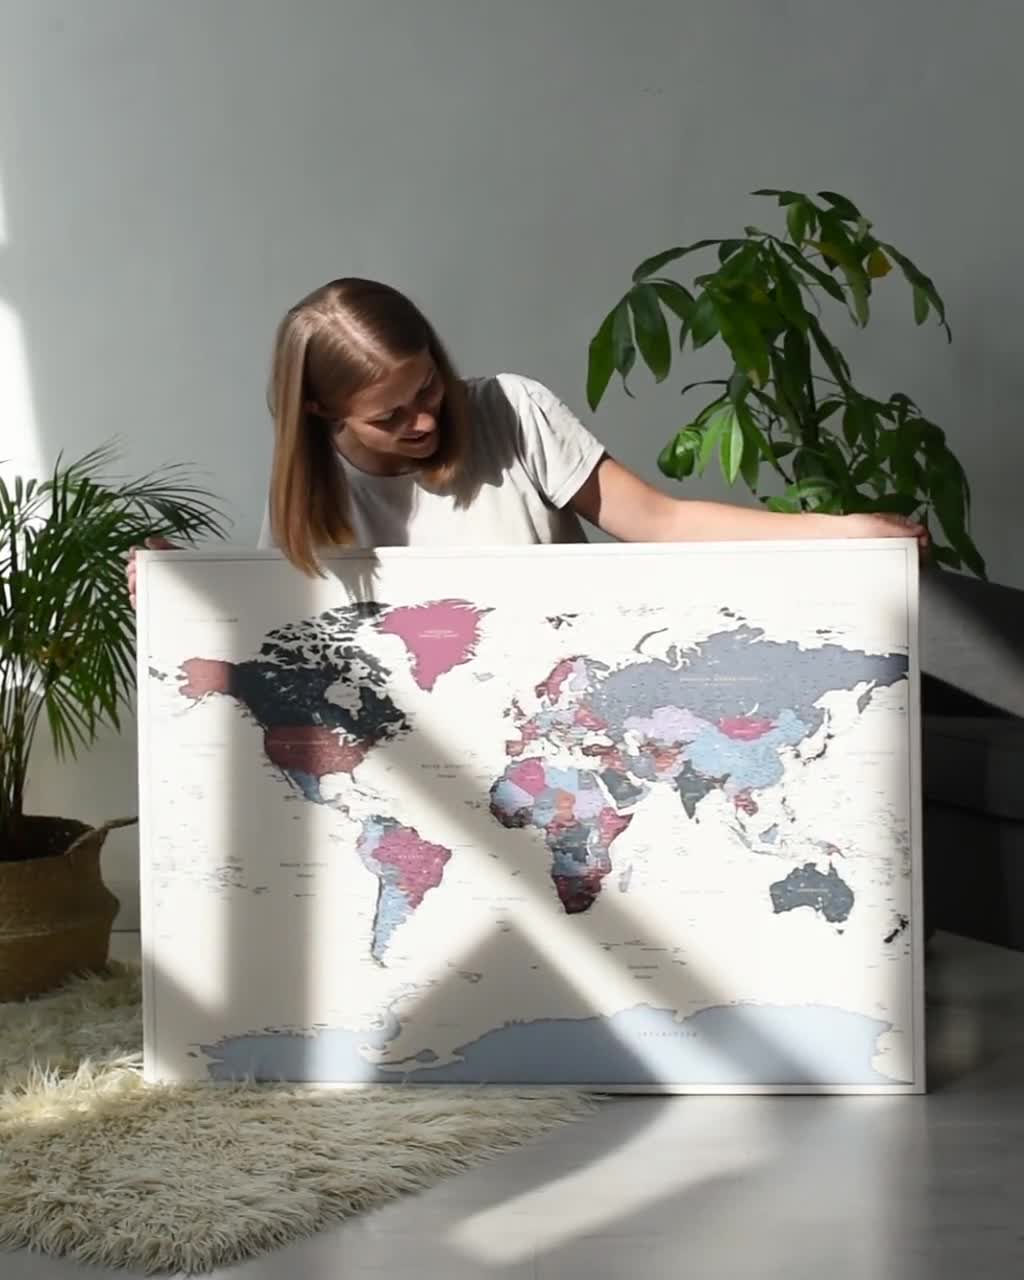 PAQUETE: 2x Mapa mundial de lugares en los que has estado para marcar viajes  Mapa de viaje detallado con chinchetas Tablero de alfileres con mapa  personalizado Arte de pared 100x70cm/39x27 